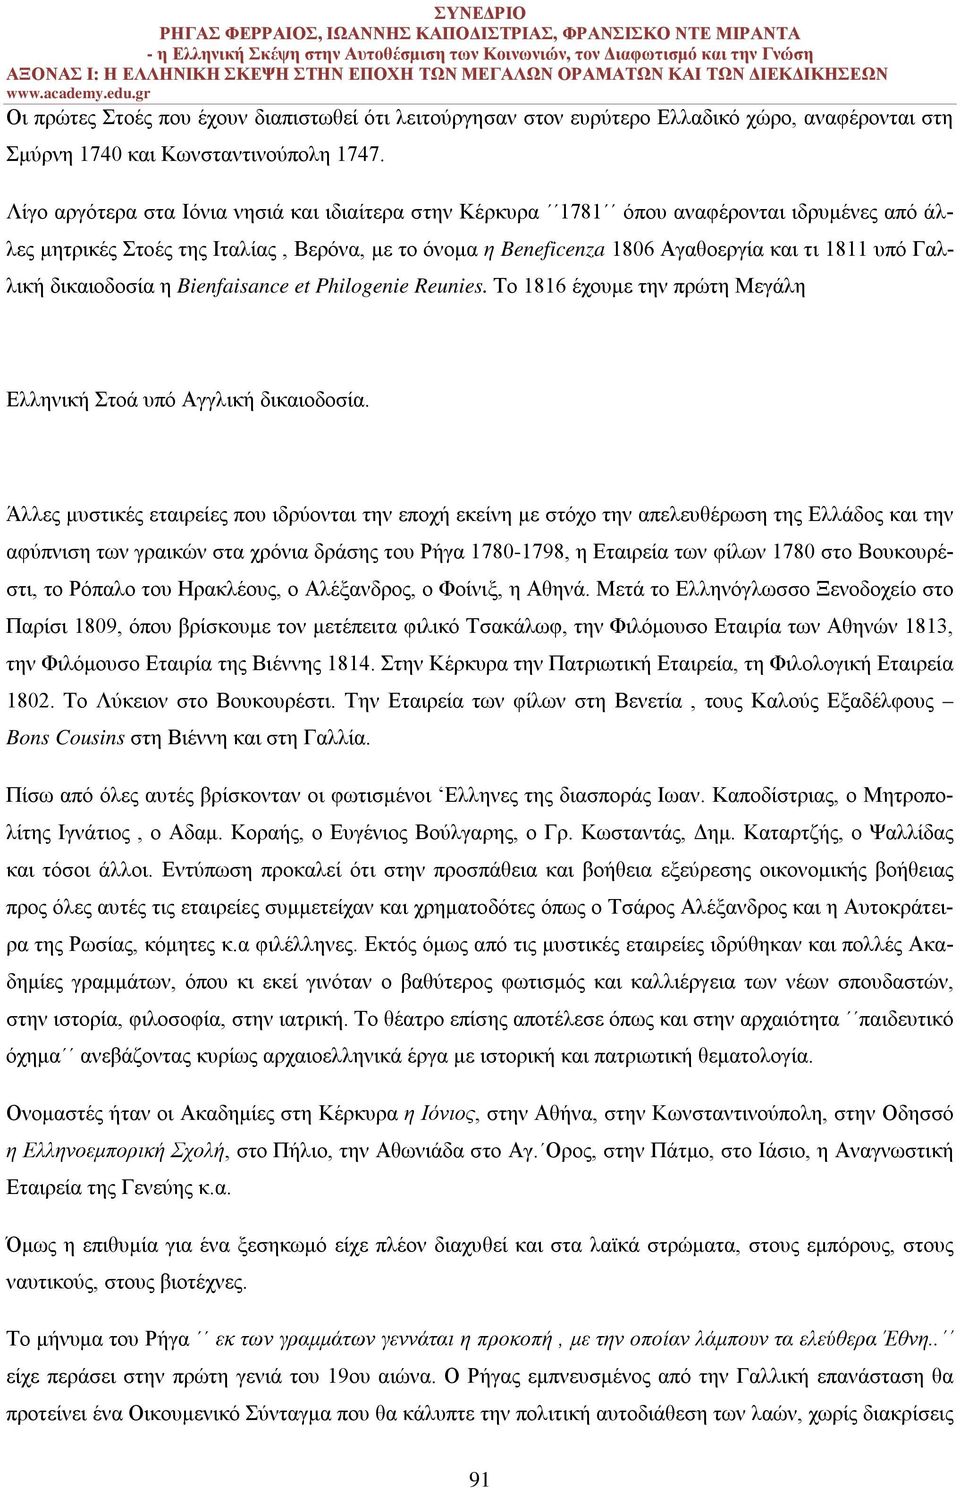 Γαλλική δικαιοδοσία η Bienfaisance et Philogenie Reunies. Το 1816 έχουμε την πρώτη Μεγάλη Ελληνική Στοά υπό Αγγλική δικαιοδοσία.